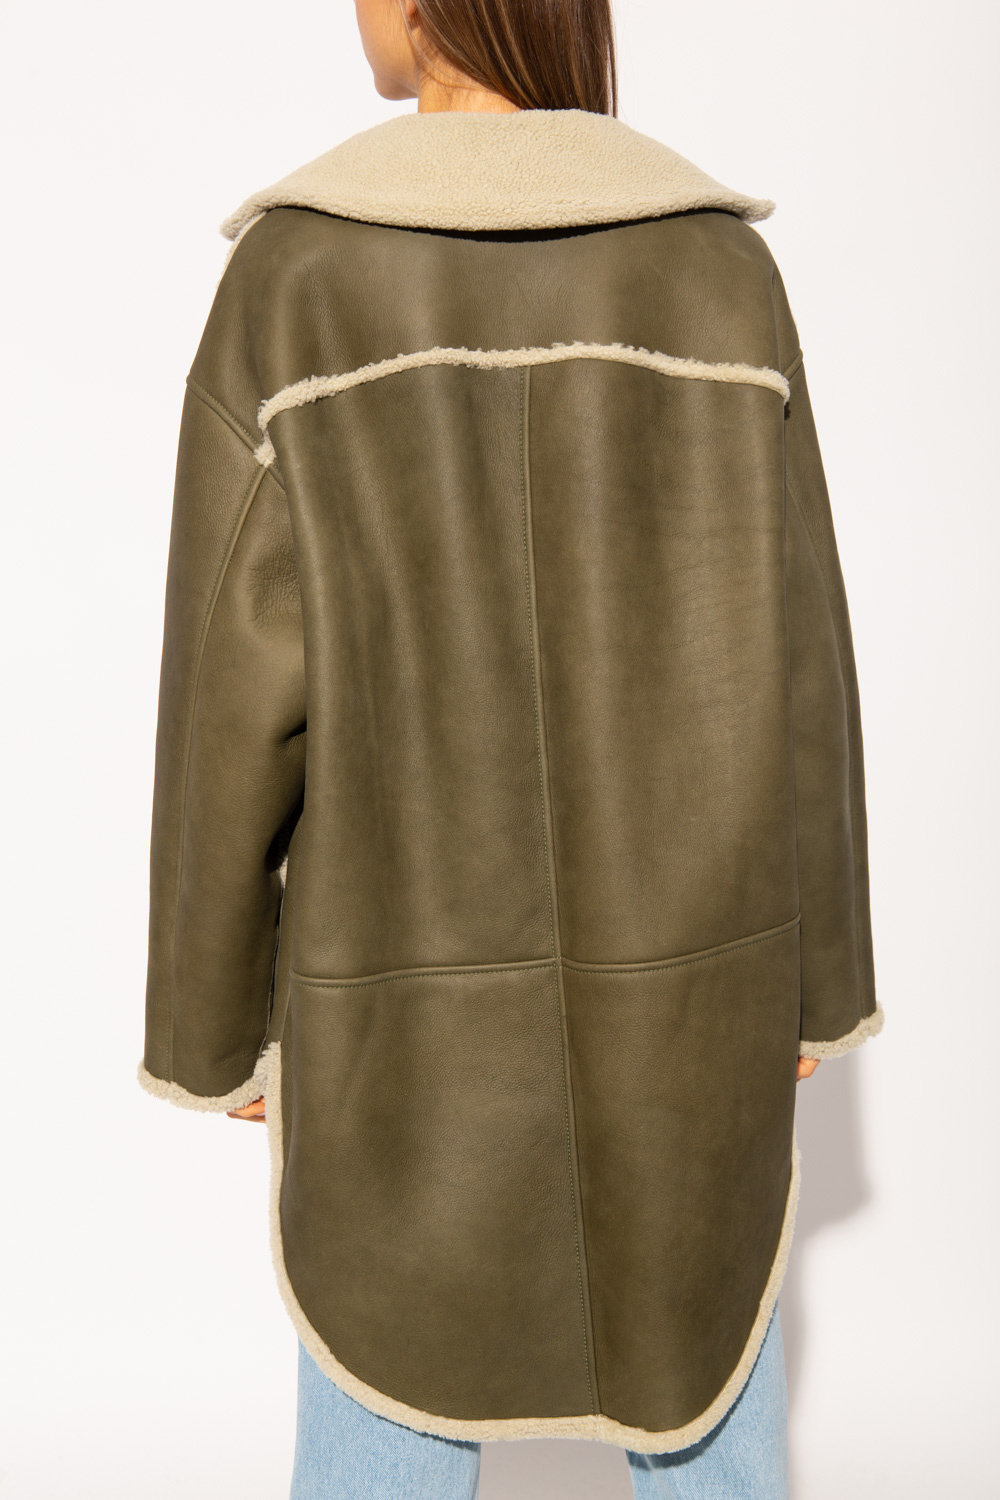 Loewe Reversible jacket